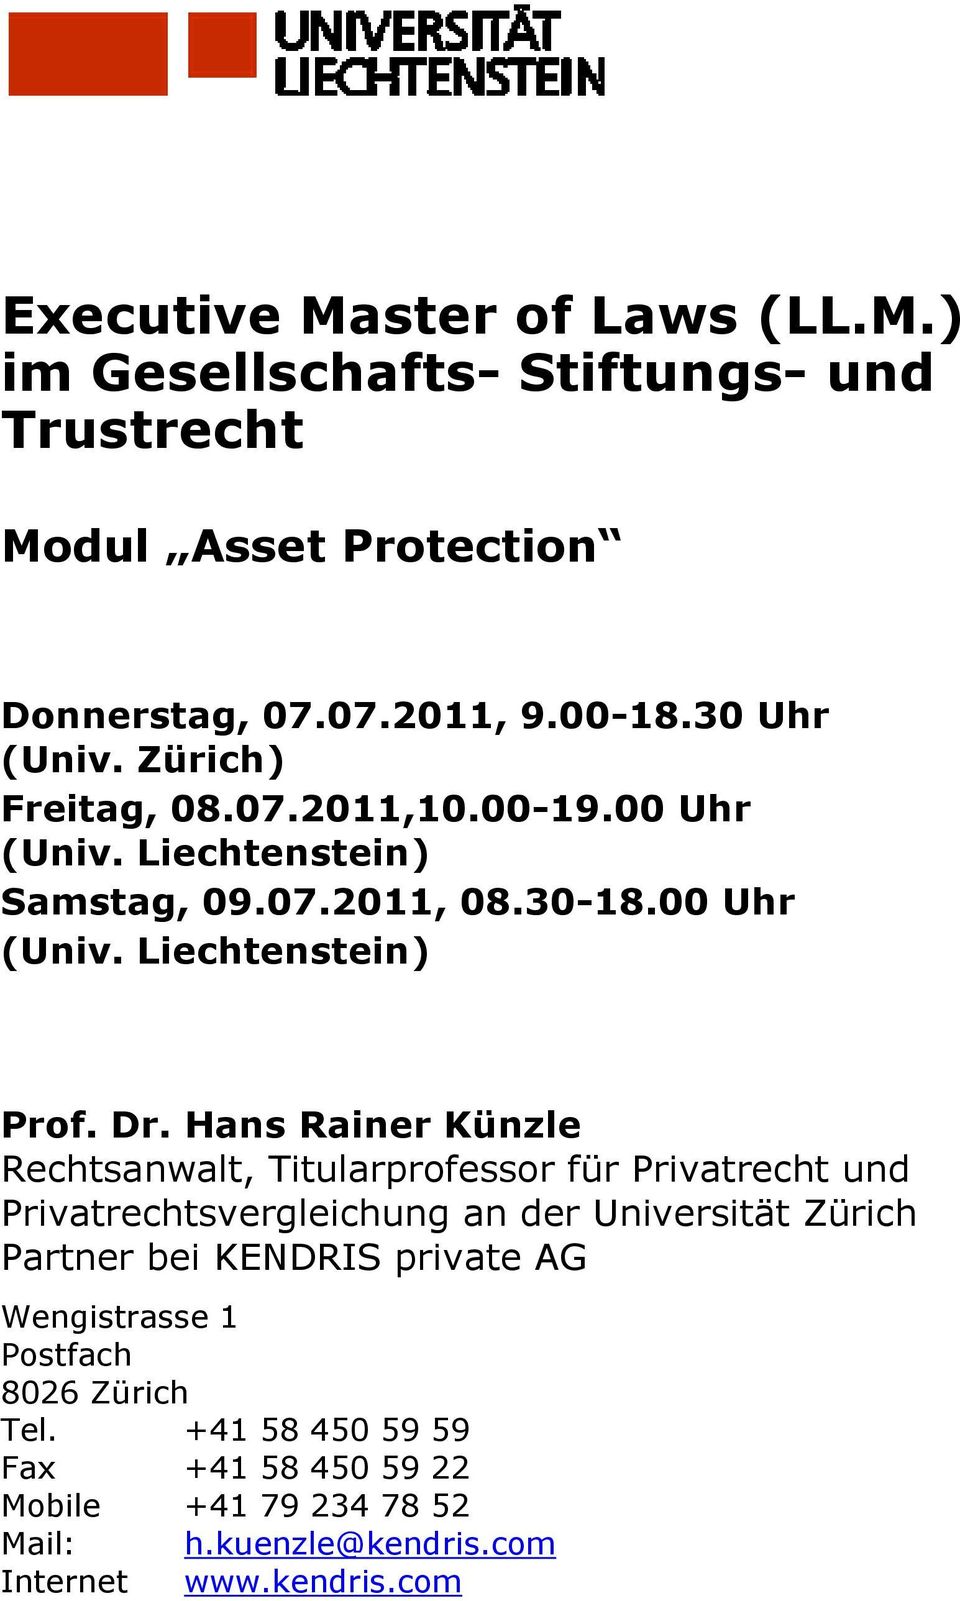 Hans Rainer Künzle Rechtsanwalt, Titularprofessor für Privatrecht und Privatrechtsvergleichung an der Universität Zürich Partner bei KENDRIS